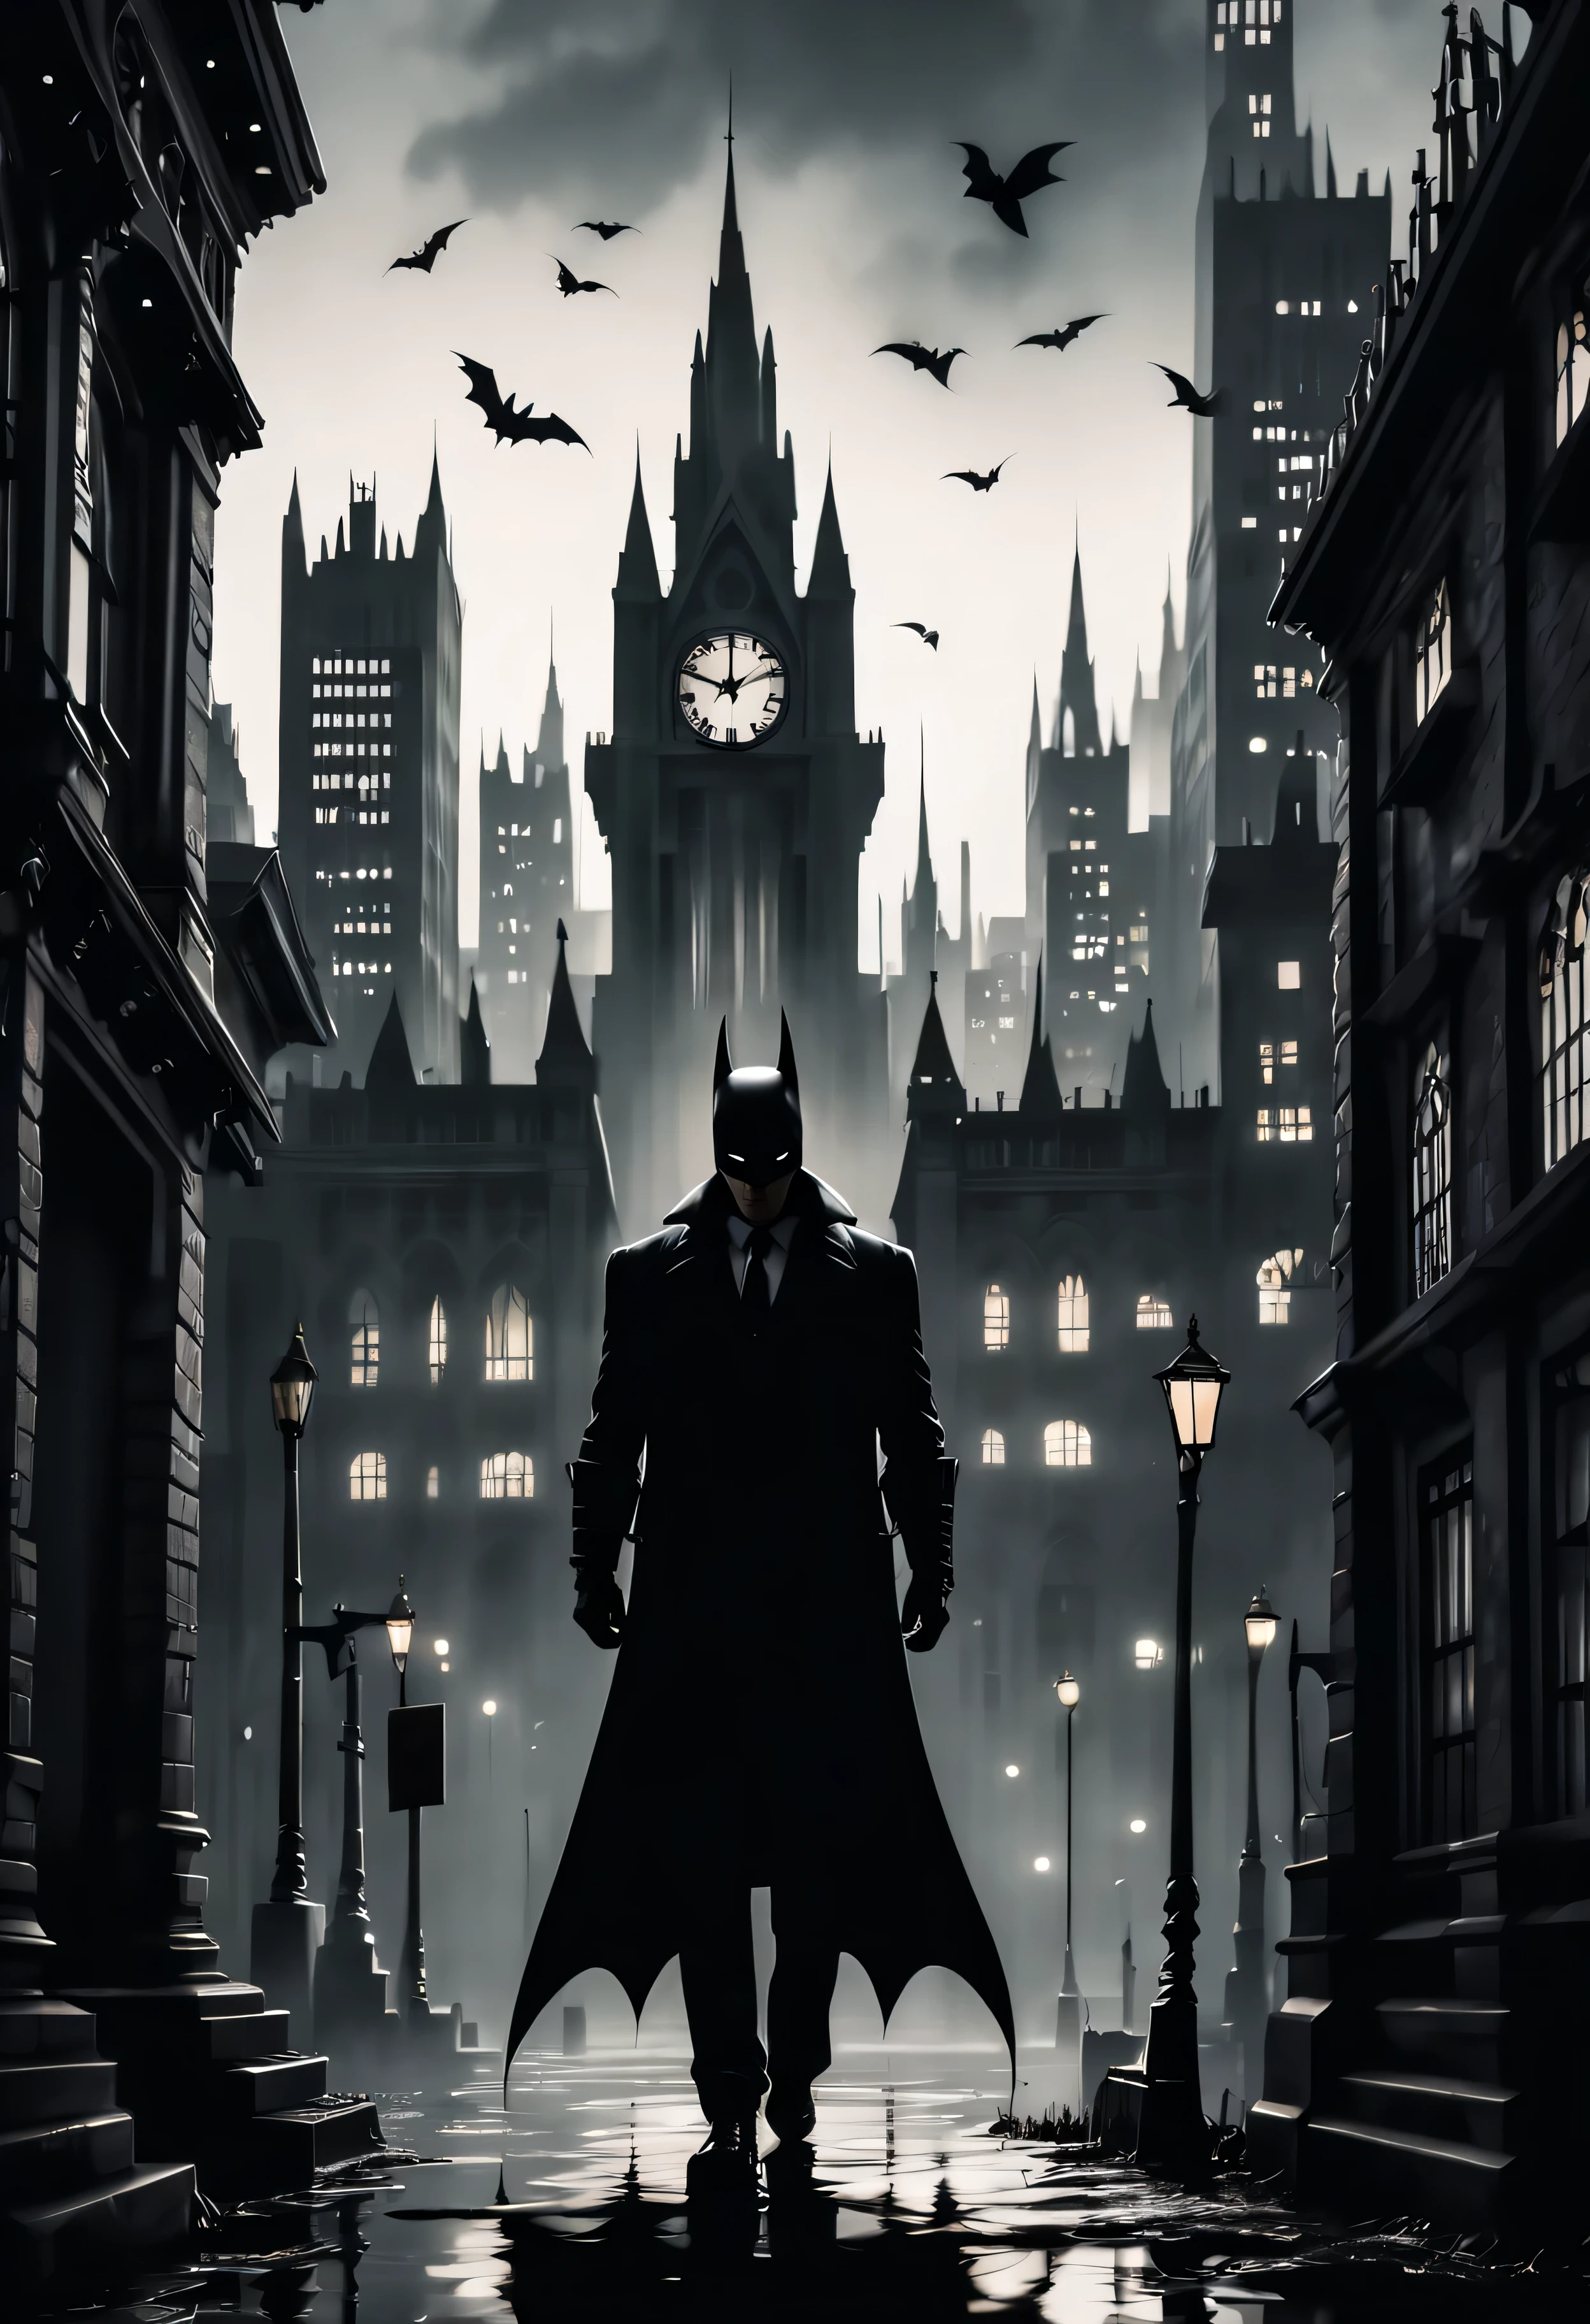 (Masterpiece dans maximum 16K resolution:1.6),((gothique_style):1.3) ((le plus sombre_danssane_silhouette_illustration):1.2),(danstricate detail:1.4), (extremely danssane detail:1.4),(la plus haute qualité:1.3),(hyper_réaliste:1.3). | noir et blanc, silhouette art, (style art déco ville de gotham),figurine de Batman, détails subtils, gothique background, sdet lightdansg, captivatdansg composition, silhouette de batman, artistic dansterpretation. | ((silhouette_de_Gotham_ville__dans_gothique_style):1.5), gothique decorations, décorations sombres, chaque art détaillé et rendu avec une technique de gouache magistrale, silhouette art behance,surréaliste, Cela donne une aura exotique. | (parfait_fdansgers:1.0), (parfait_Jambes:1.0), mieux_mains, Plus_détail.